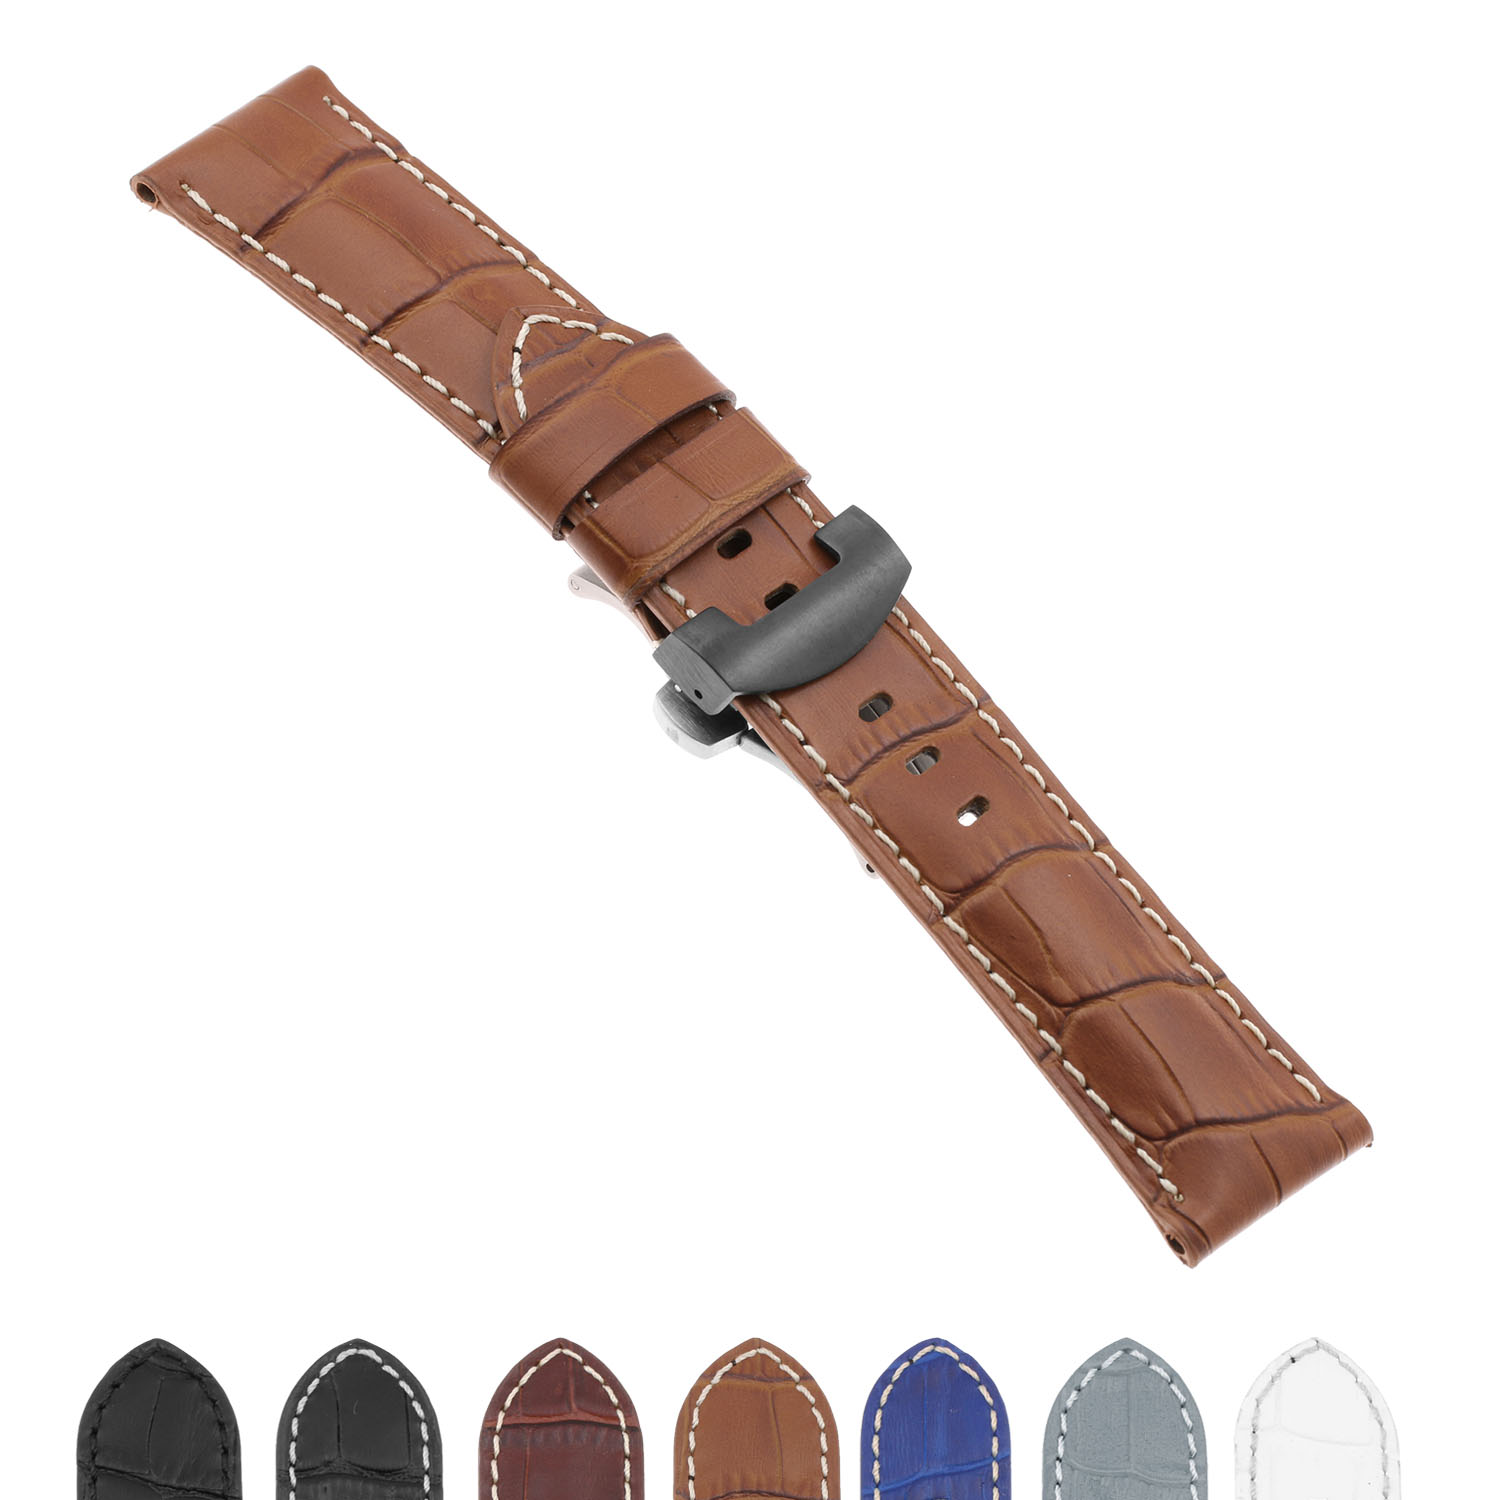 Strapsco DASSARI Croc Leather Strap for Samsung Gear S3 Frontier